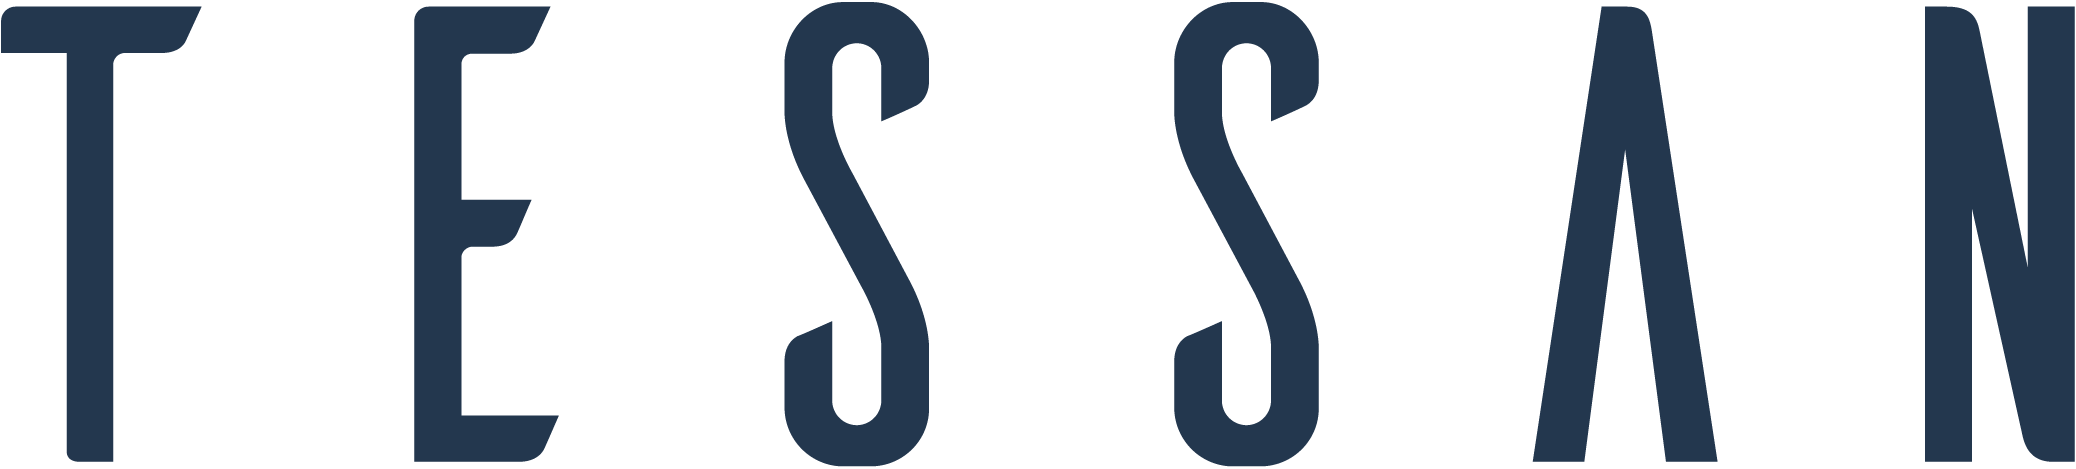 Logo exposant TESSAN